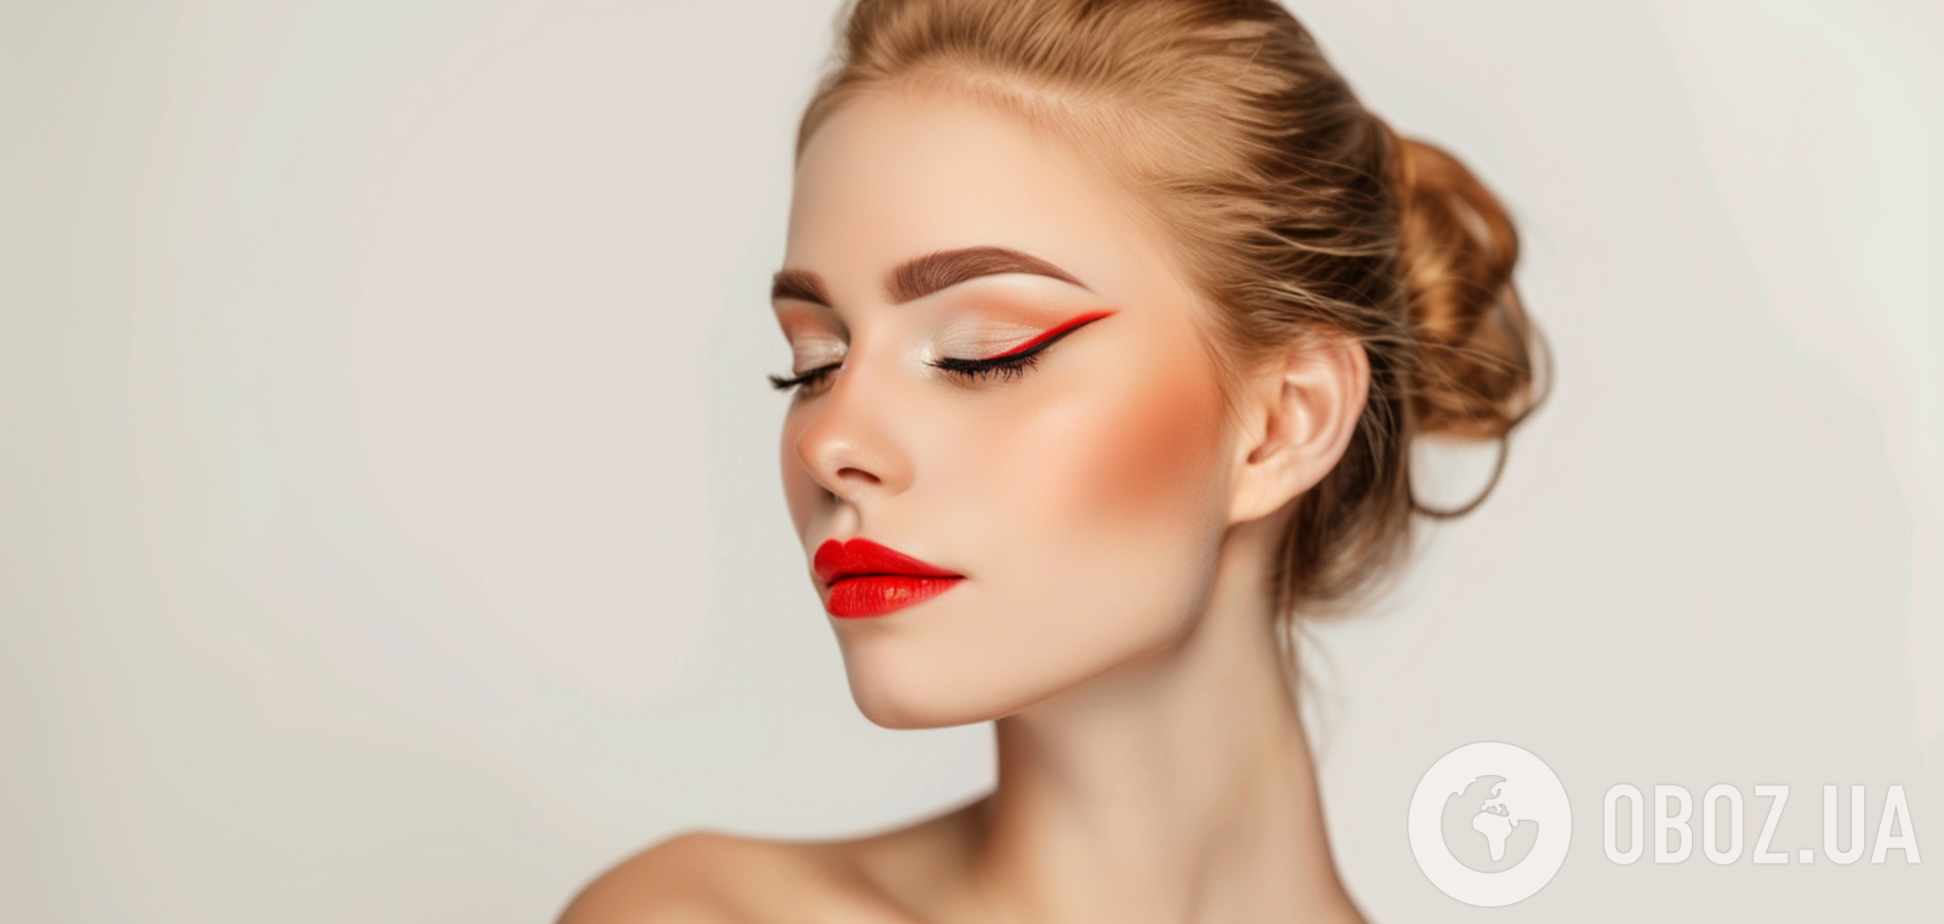 Как сделать стойкий макияж, если постоянно слезятся глаза: советы